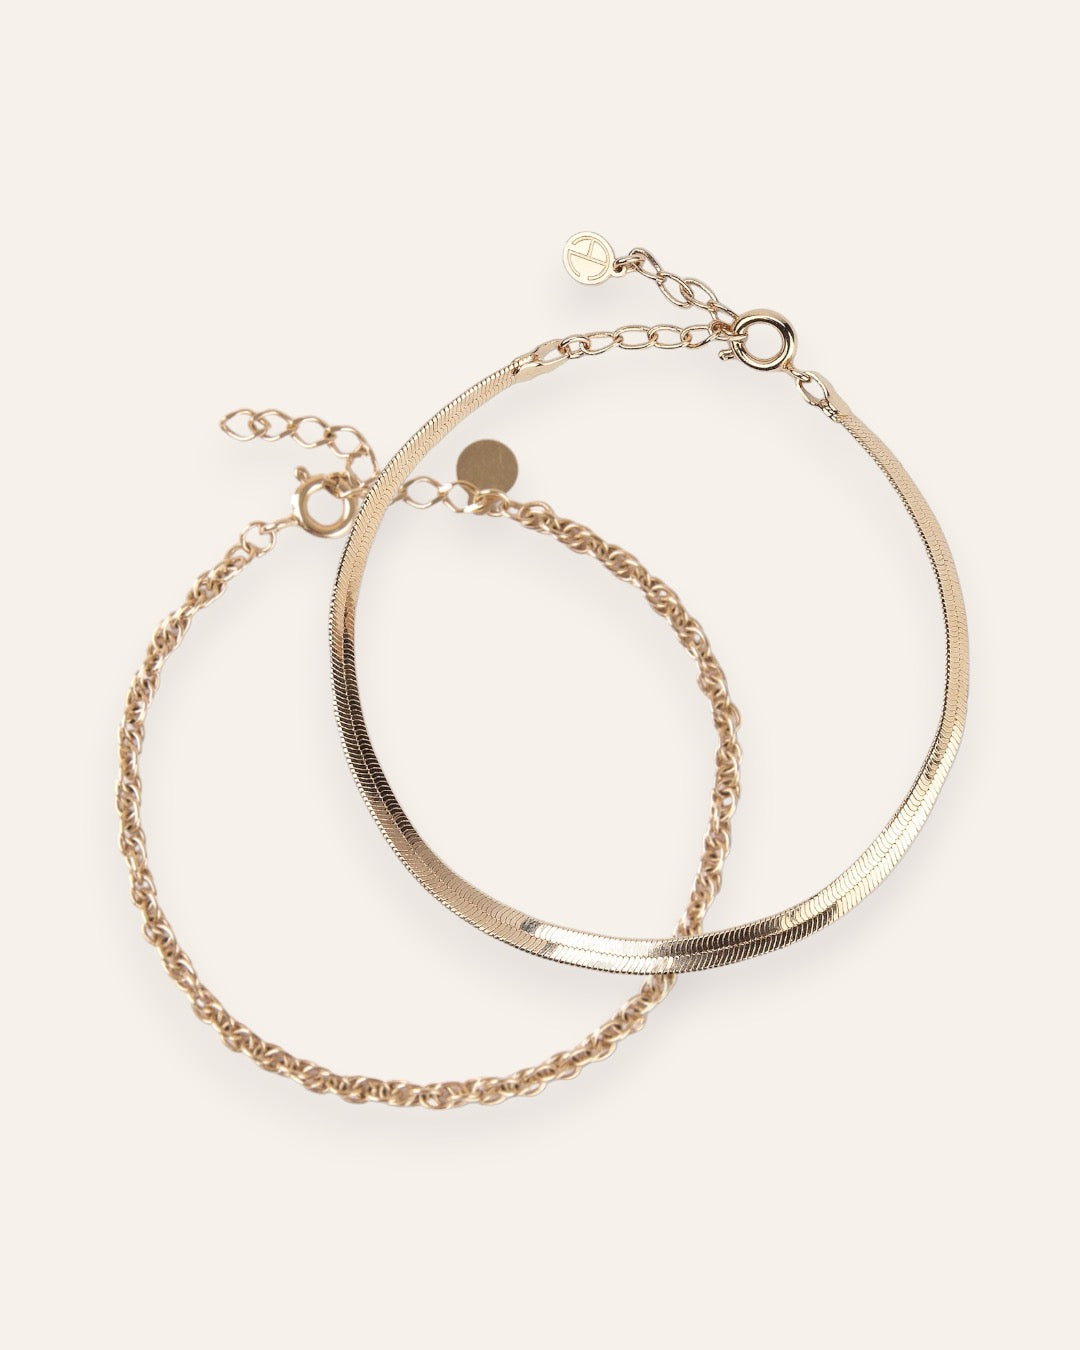 Composition de deux bracelets, avec un bracelet en chaîne plate et un bracelet en chaîne torsadée en plaqué or 18 carats.